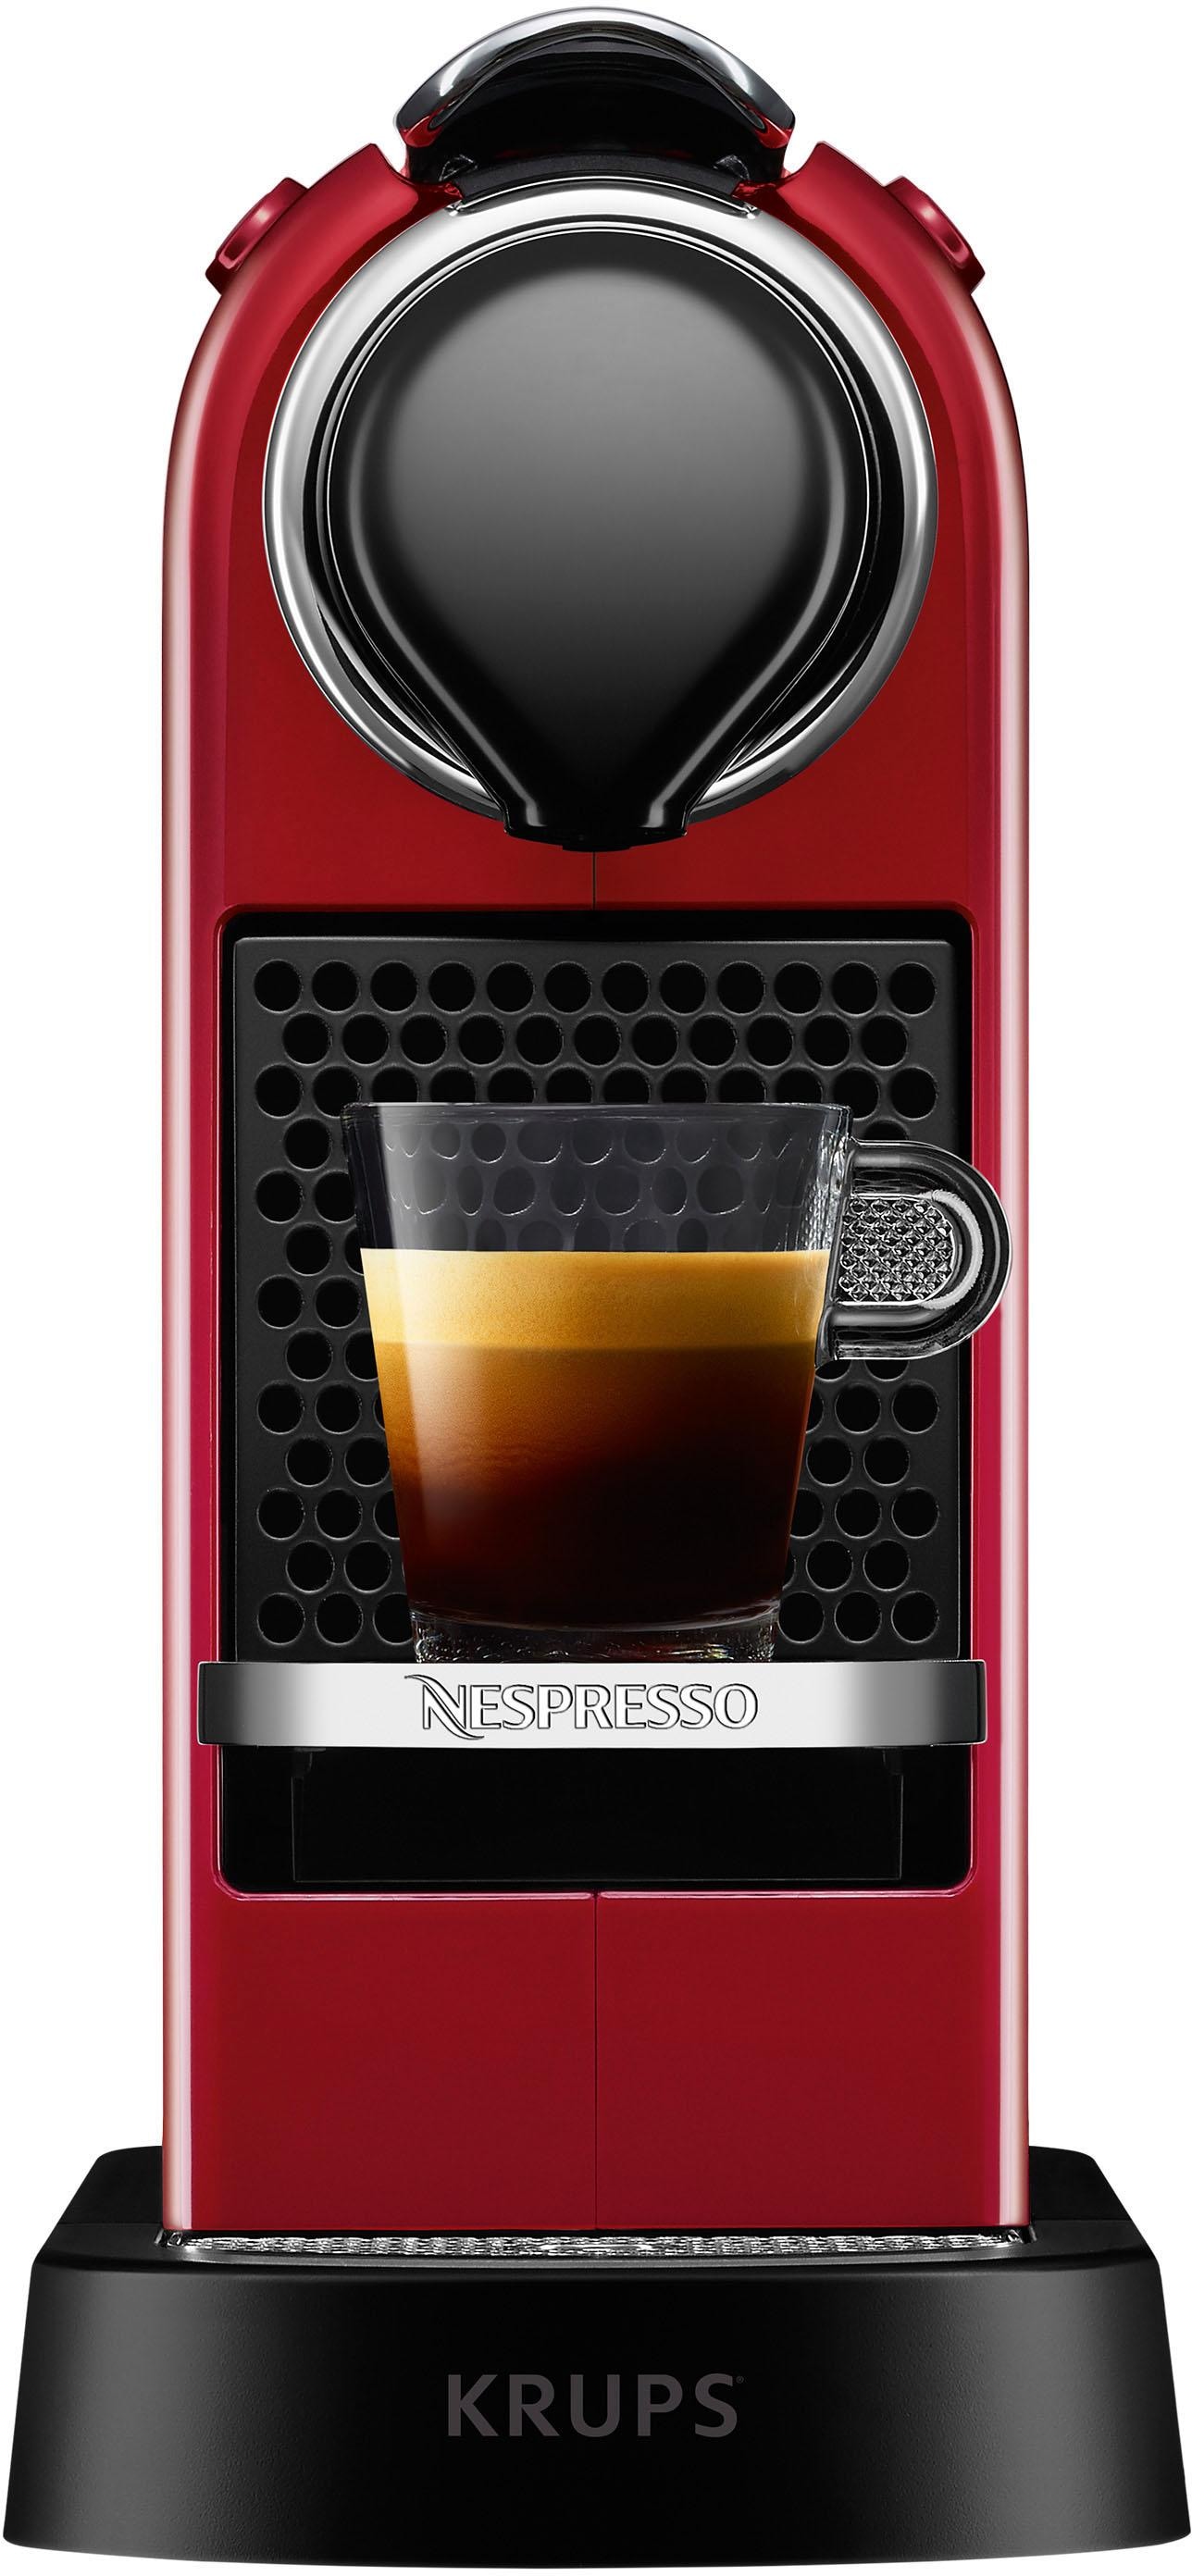 XXL CitiZ Wassertank: »XN7415 Nespresso Kapselmaschine Krups«, 3 Kapseln mit L, Garantie inkl. von mit Willkommenspaket Jahren 14 New 1